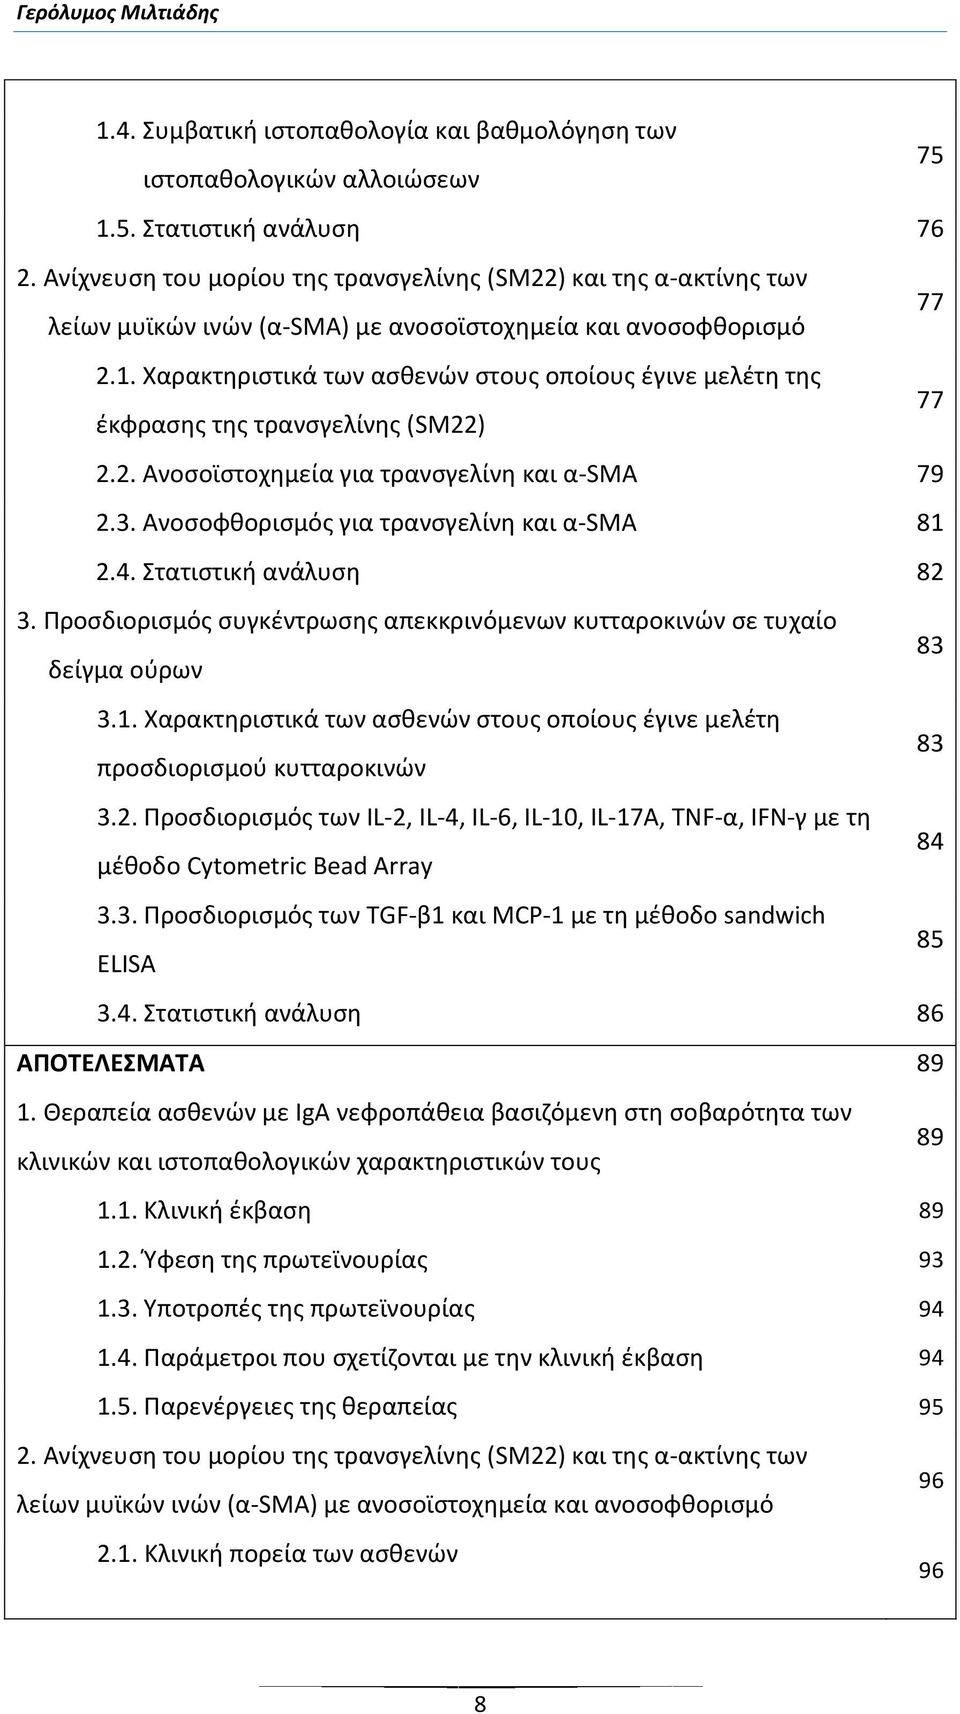 Χαρακτηριστικά των ασθενών στους οποίους έγινε μελέτη της έκφρασης της τρανσγελίνης (SM22) 77 2.2. Ανοσοϊστοχημεία για τρανσγελίνη και α-sma 79 2.3. Ανοσοφθορισμός για τρανσγελίνη και α-sma 81 2.4.